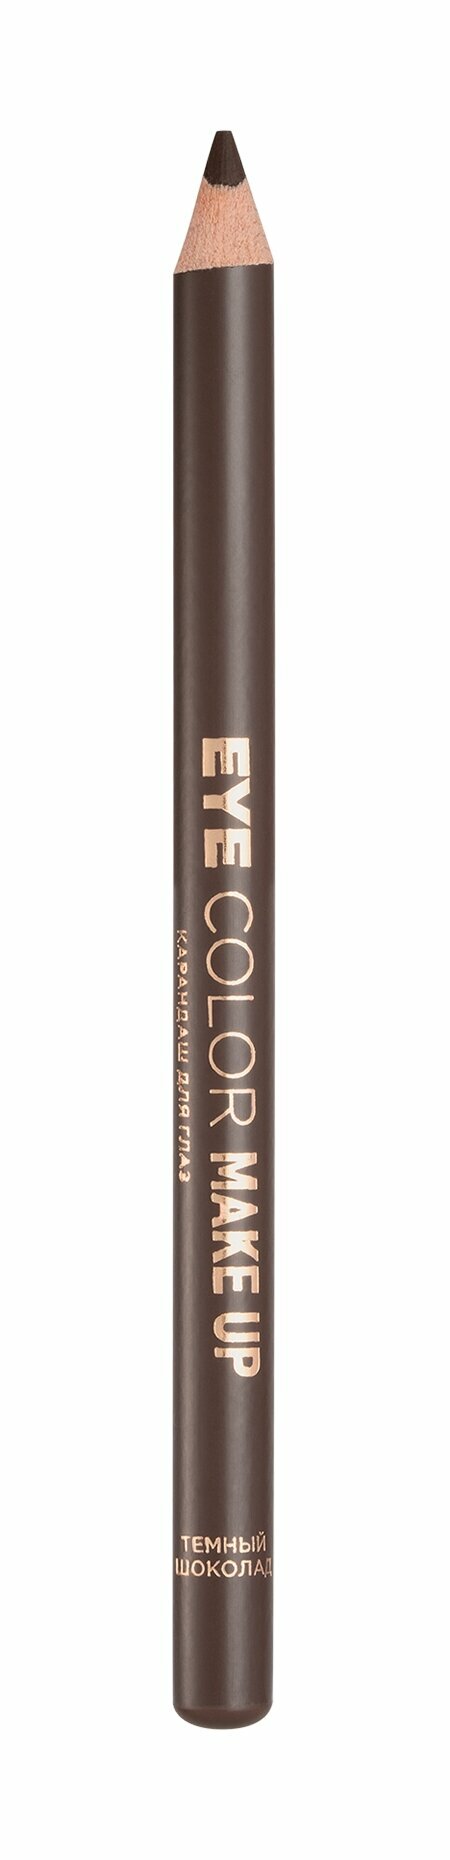 EVA MOSAIC Карандаш для глаз Eye Color Make Up, 1,1 г, Темный шоколад